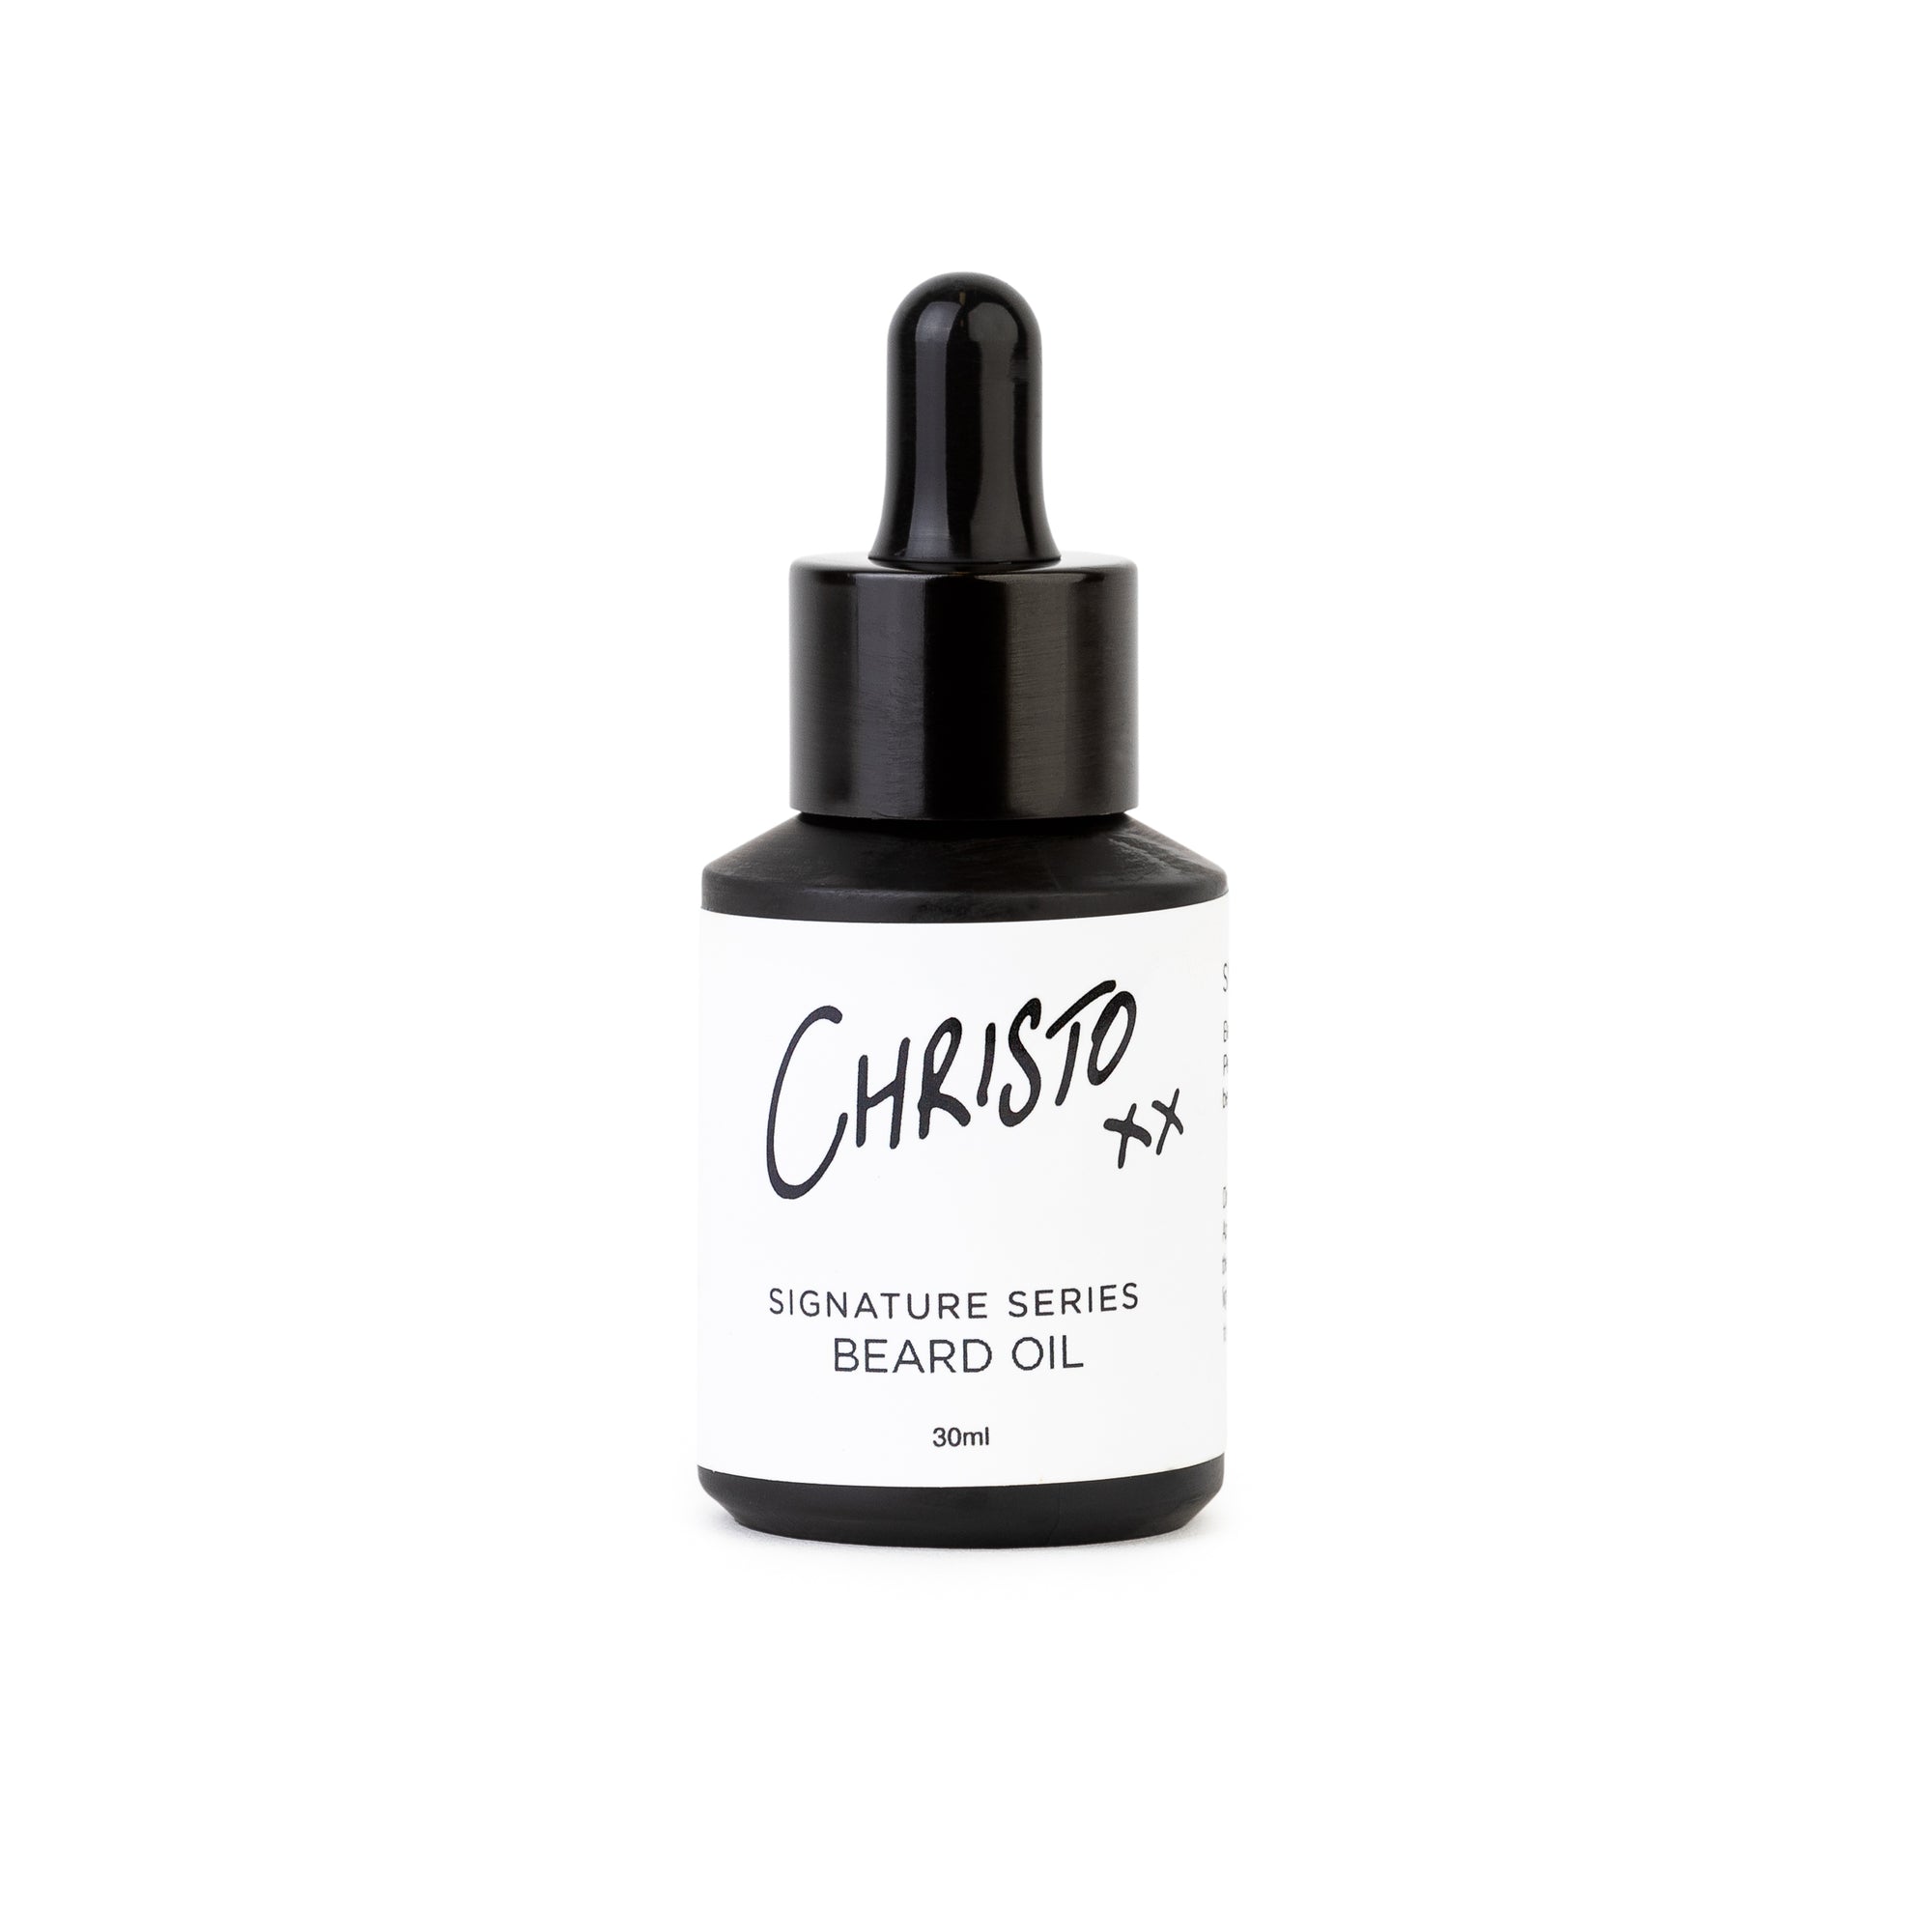 Christo Beard oil